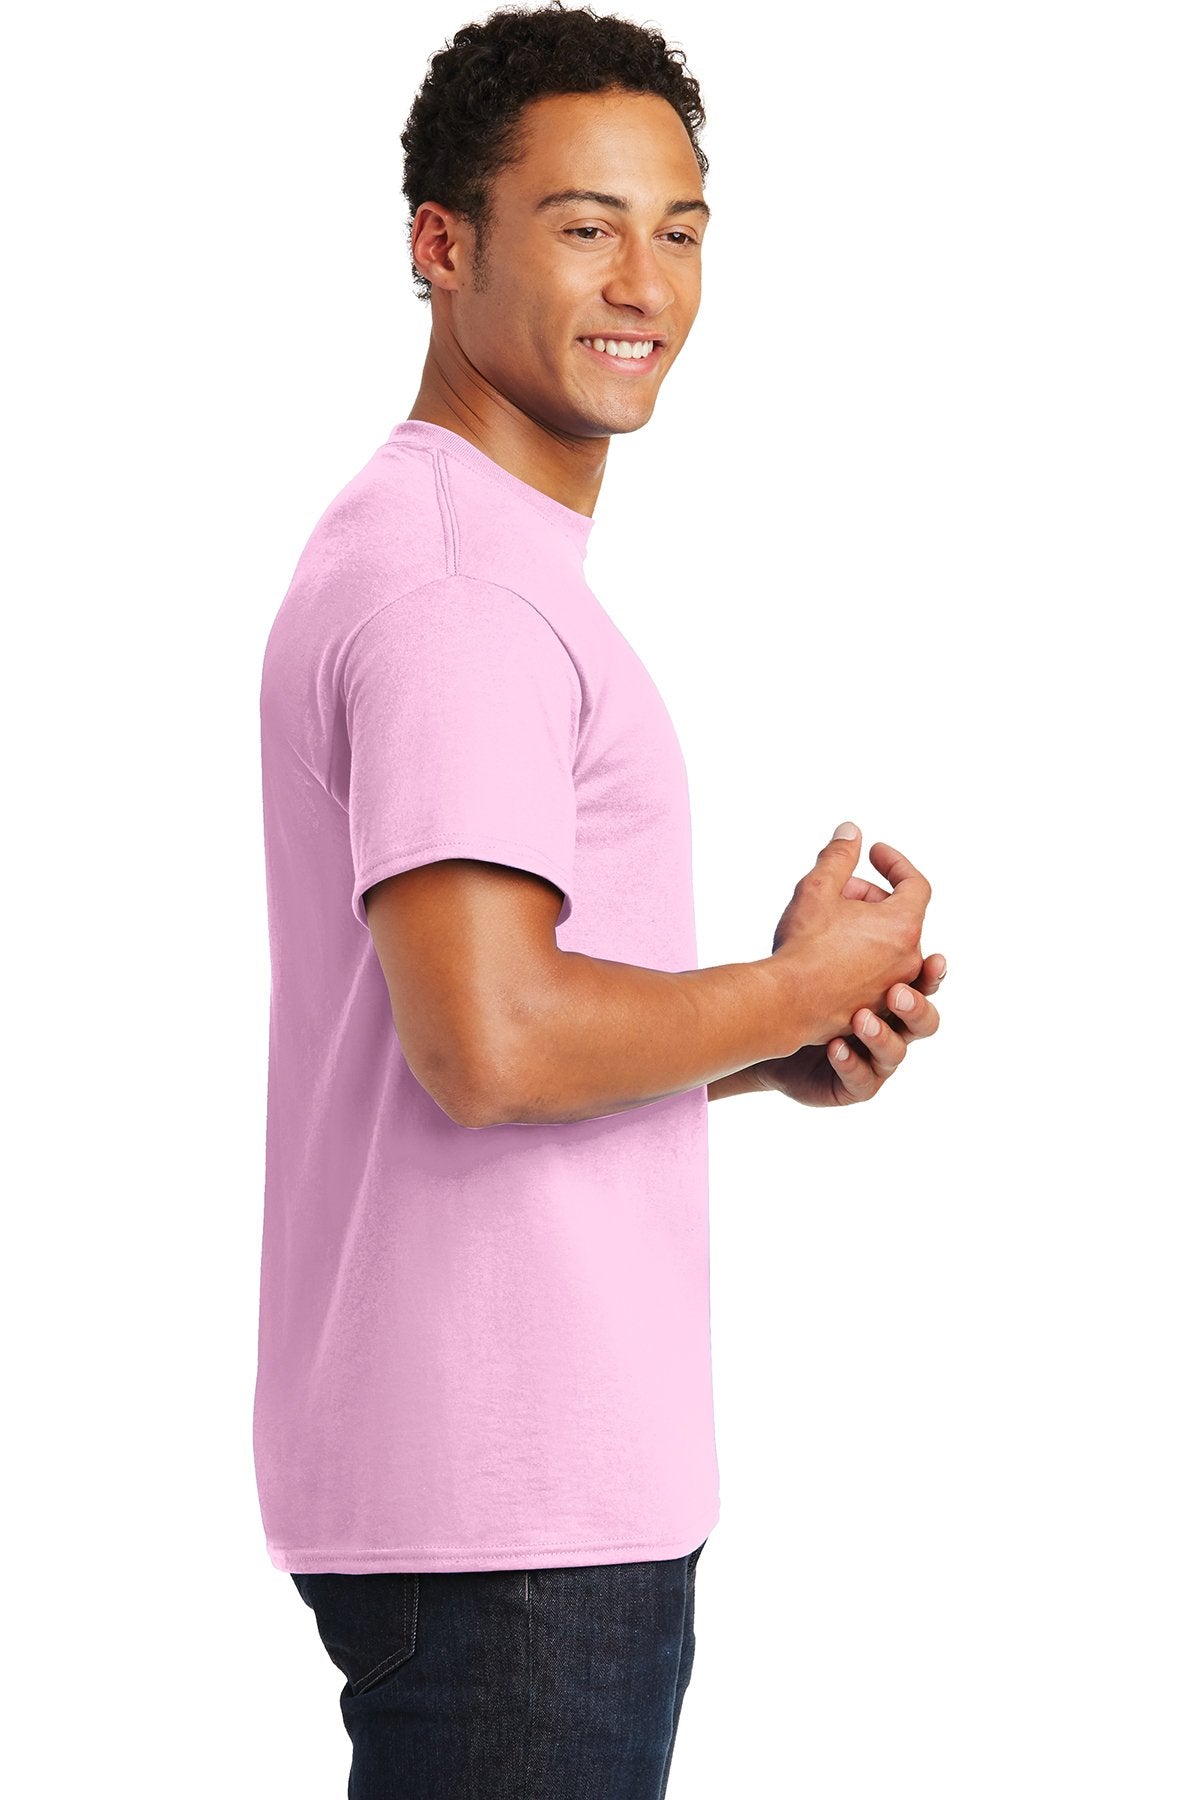 gildan dryblend cotton poly t shirt 8000 light pink